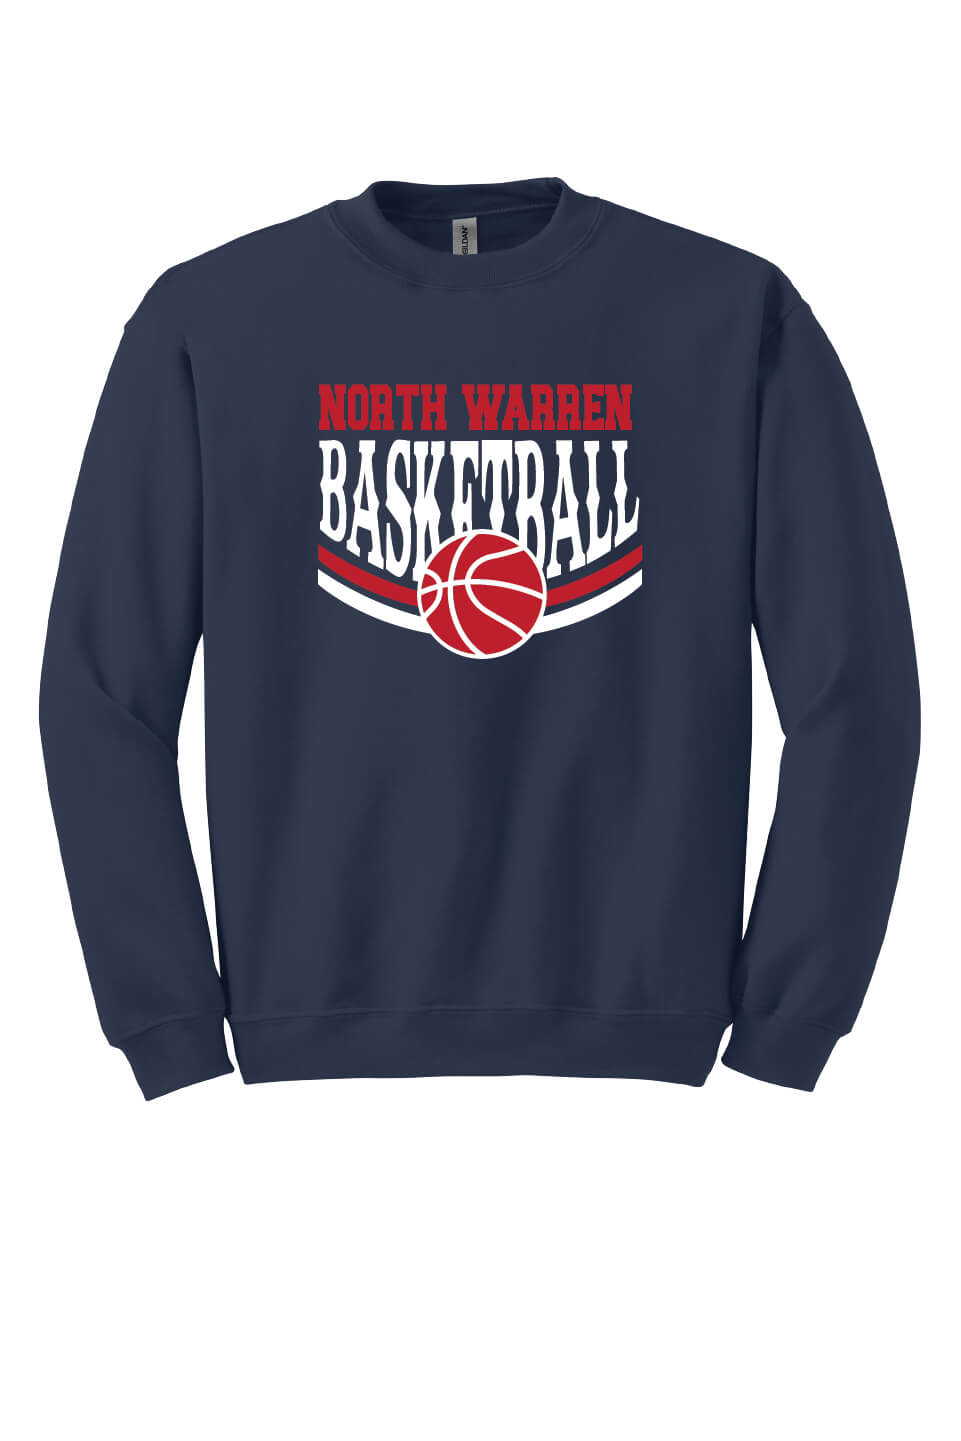 NW Basketball Crewneck Sweatshirt (Youth) navy